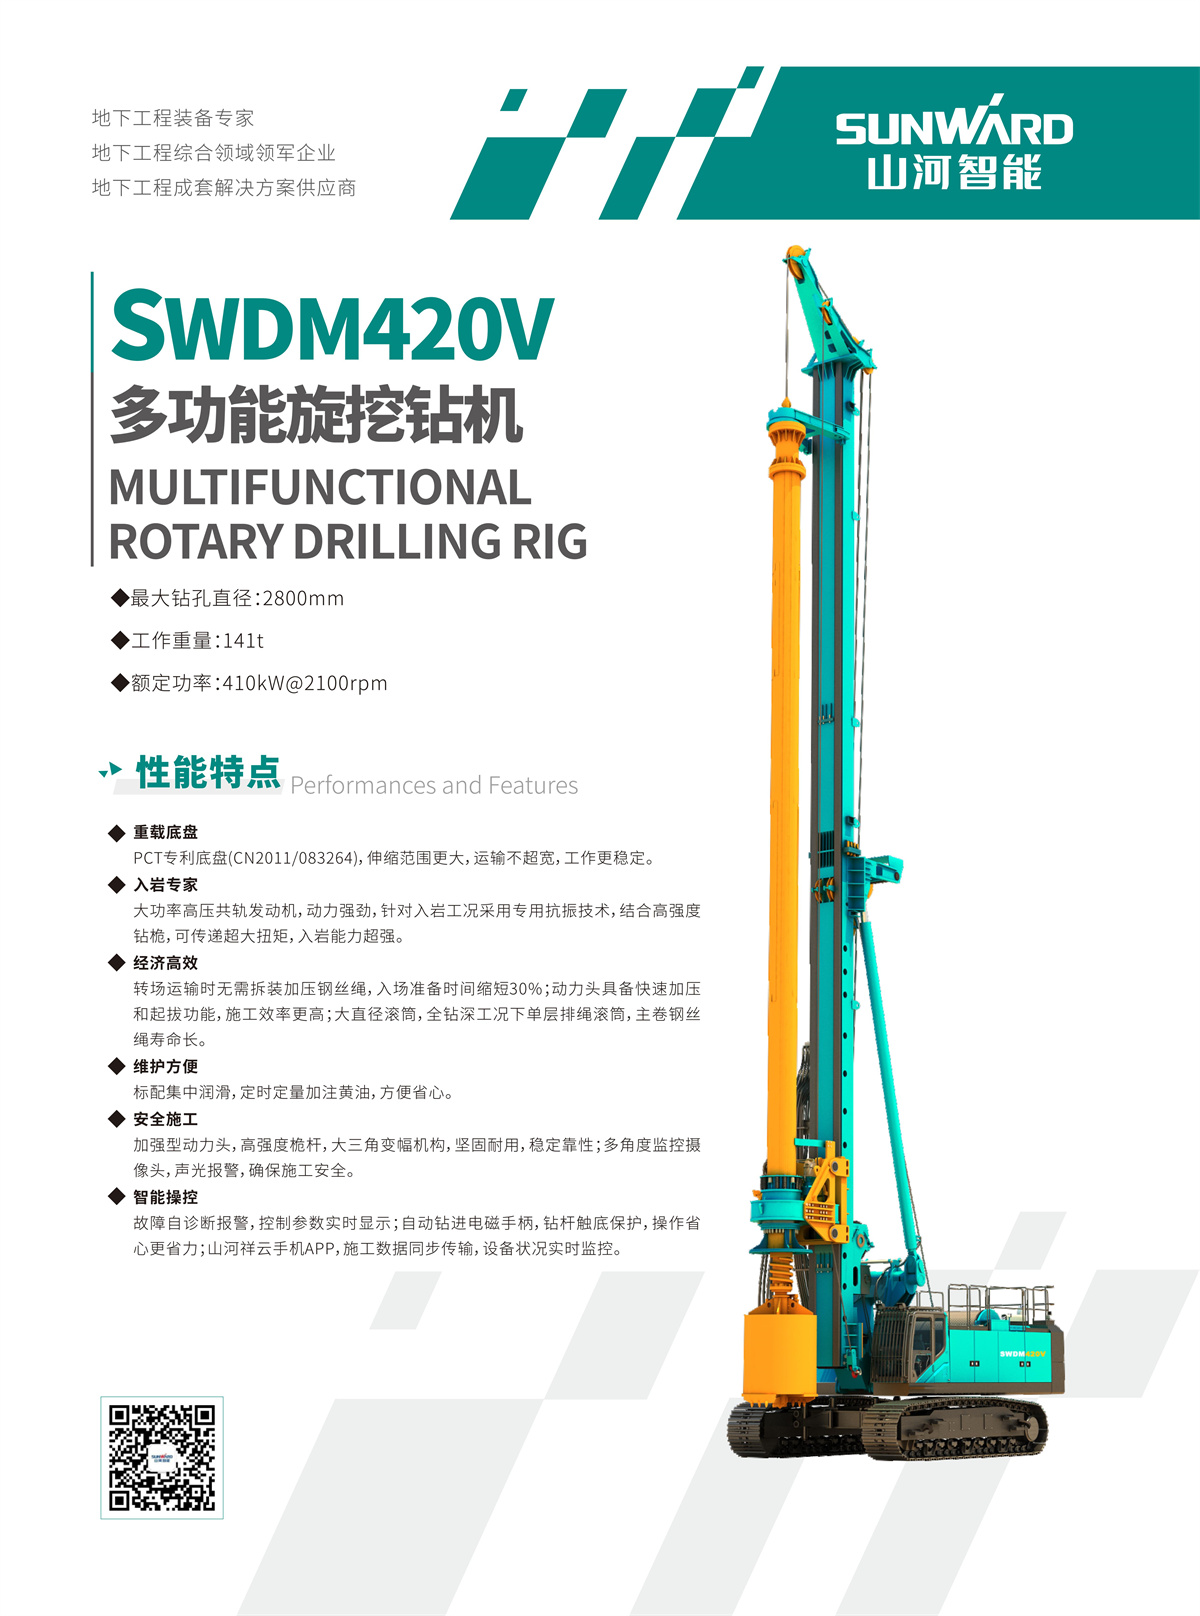 SWDM420V 超大型多功能旋挖钻机